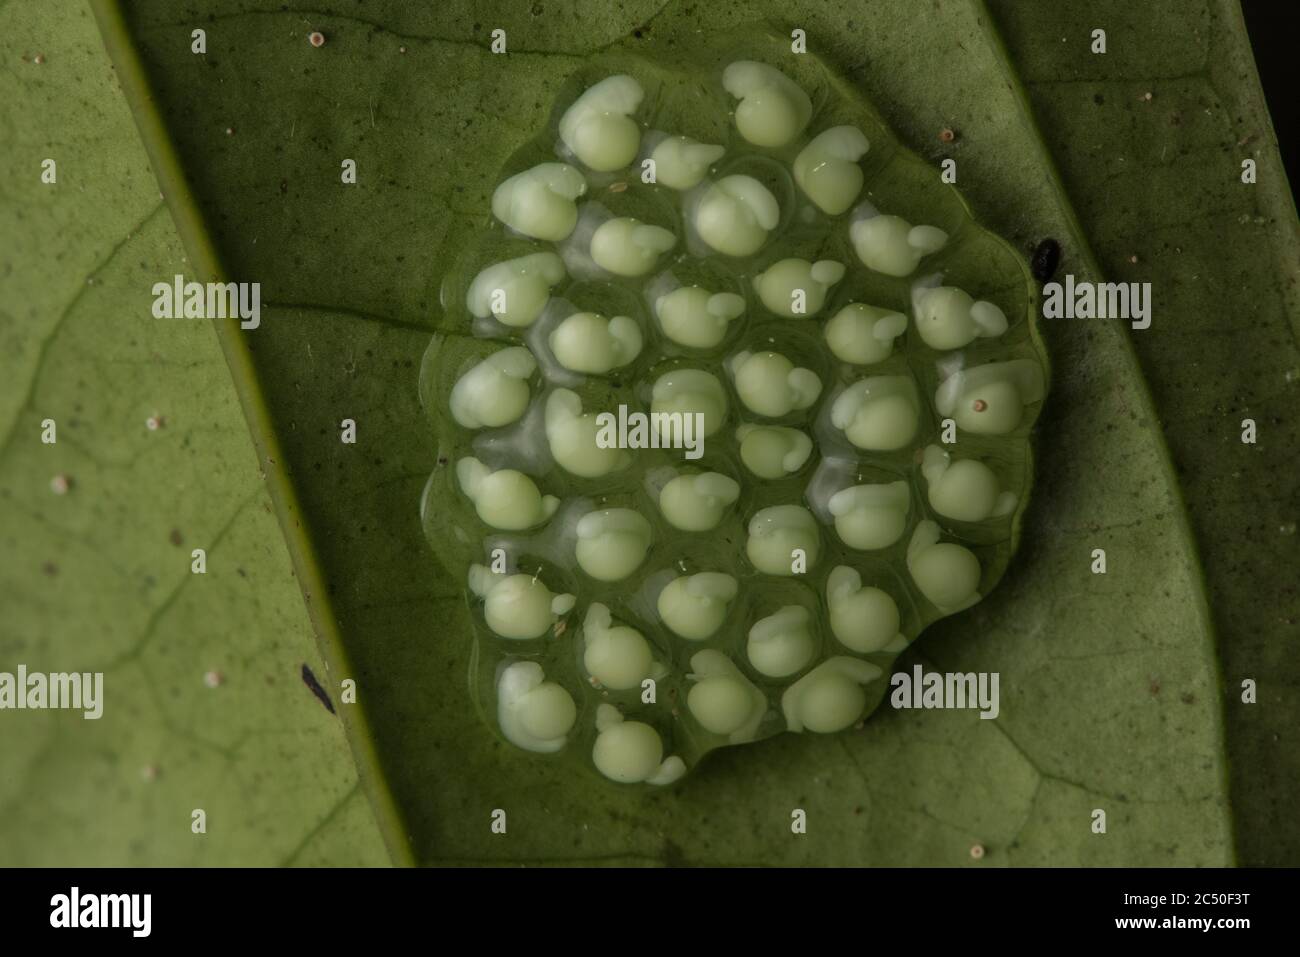 Les œufs d'une grenouille en verre se développent sur le dessous d'une feuille dans une forêt tropicale en Équateur. Banque D'Images